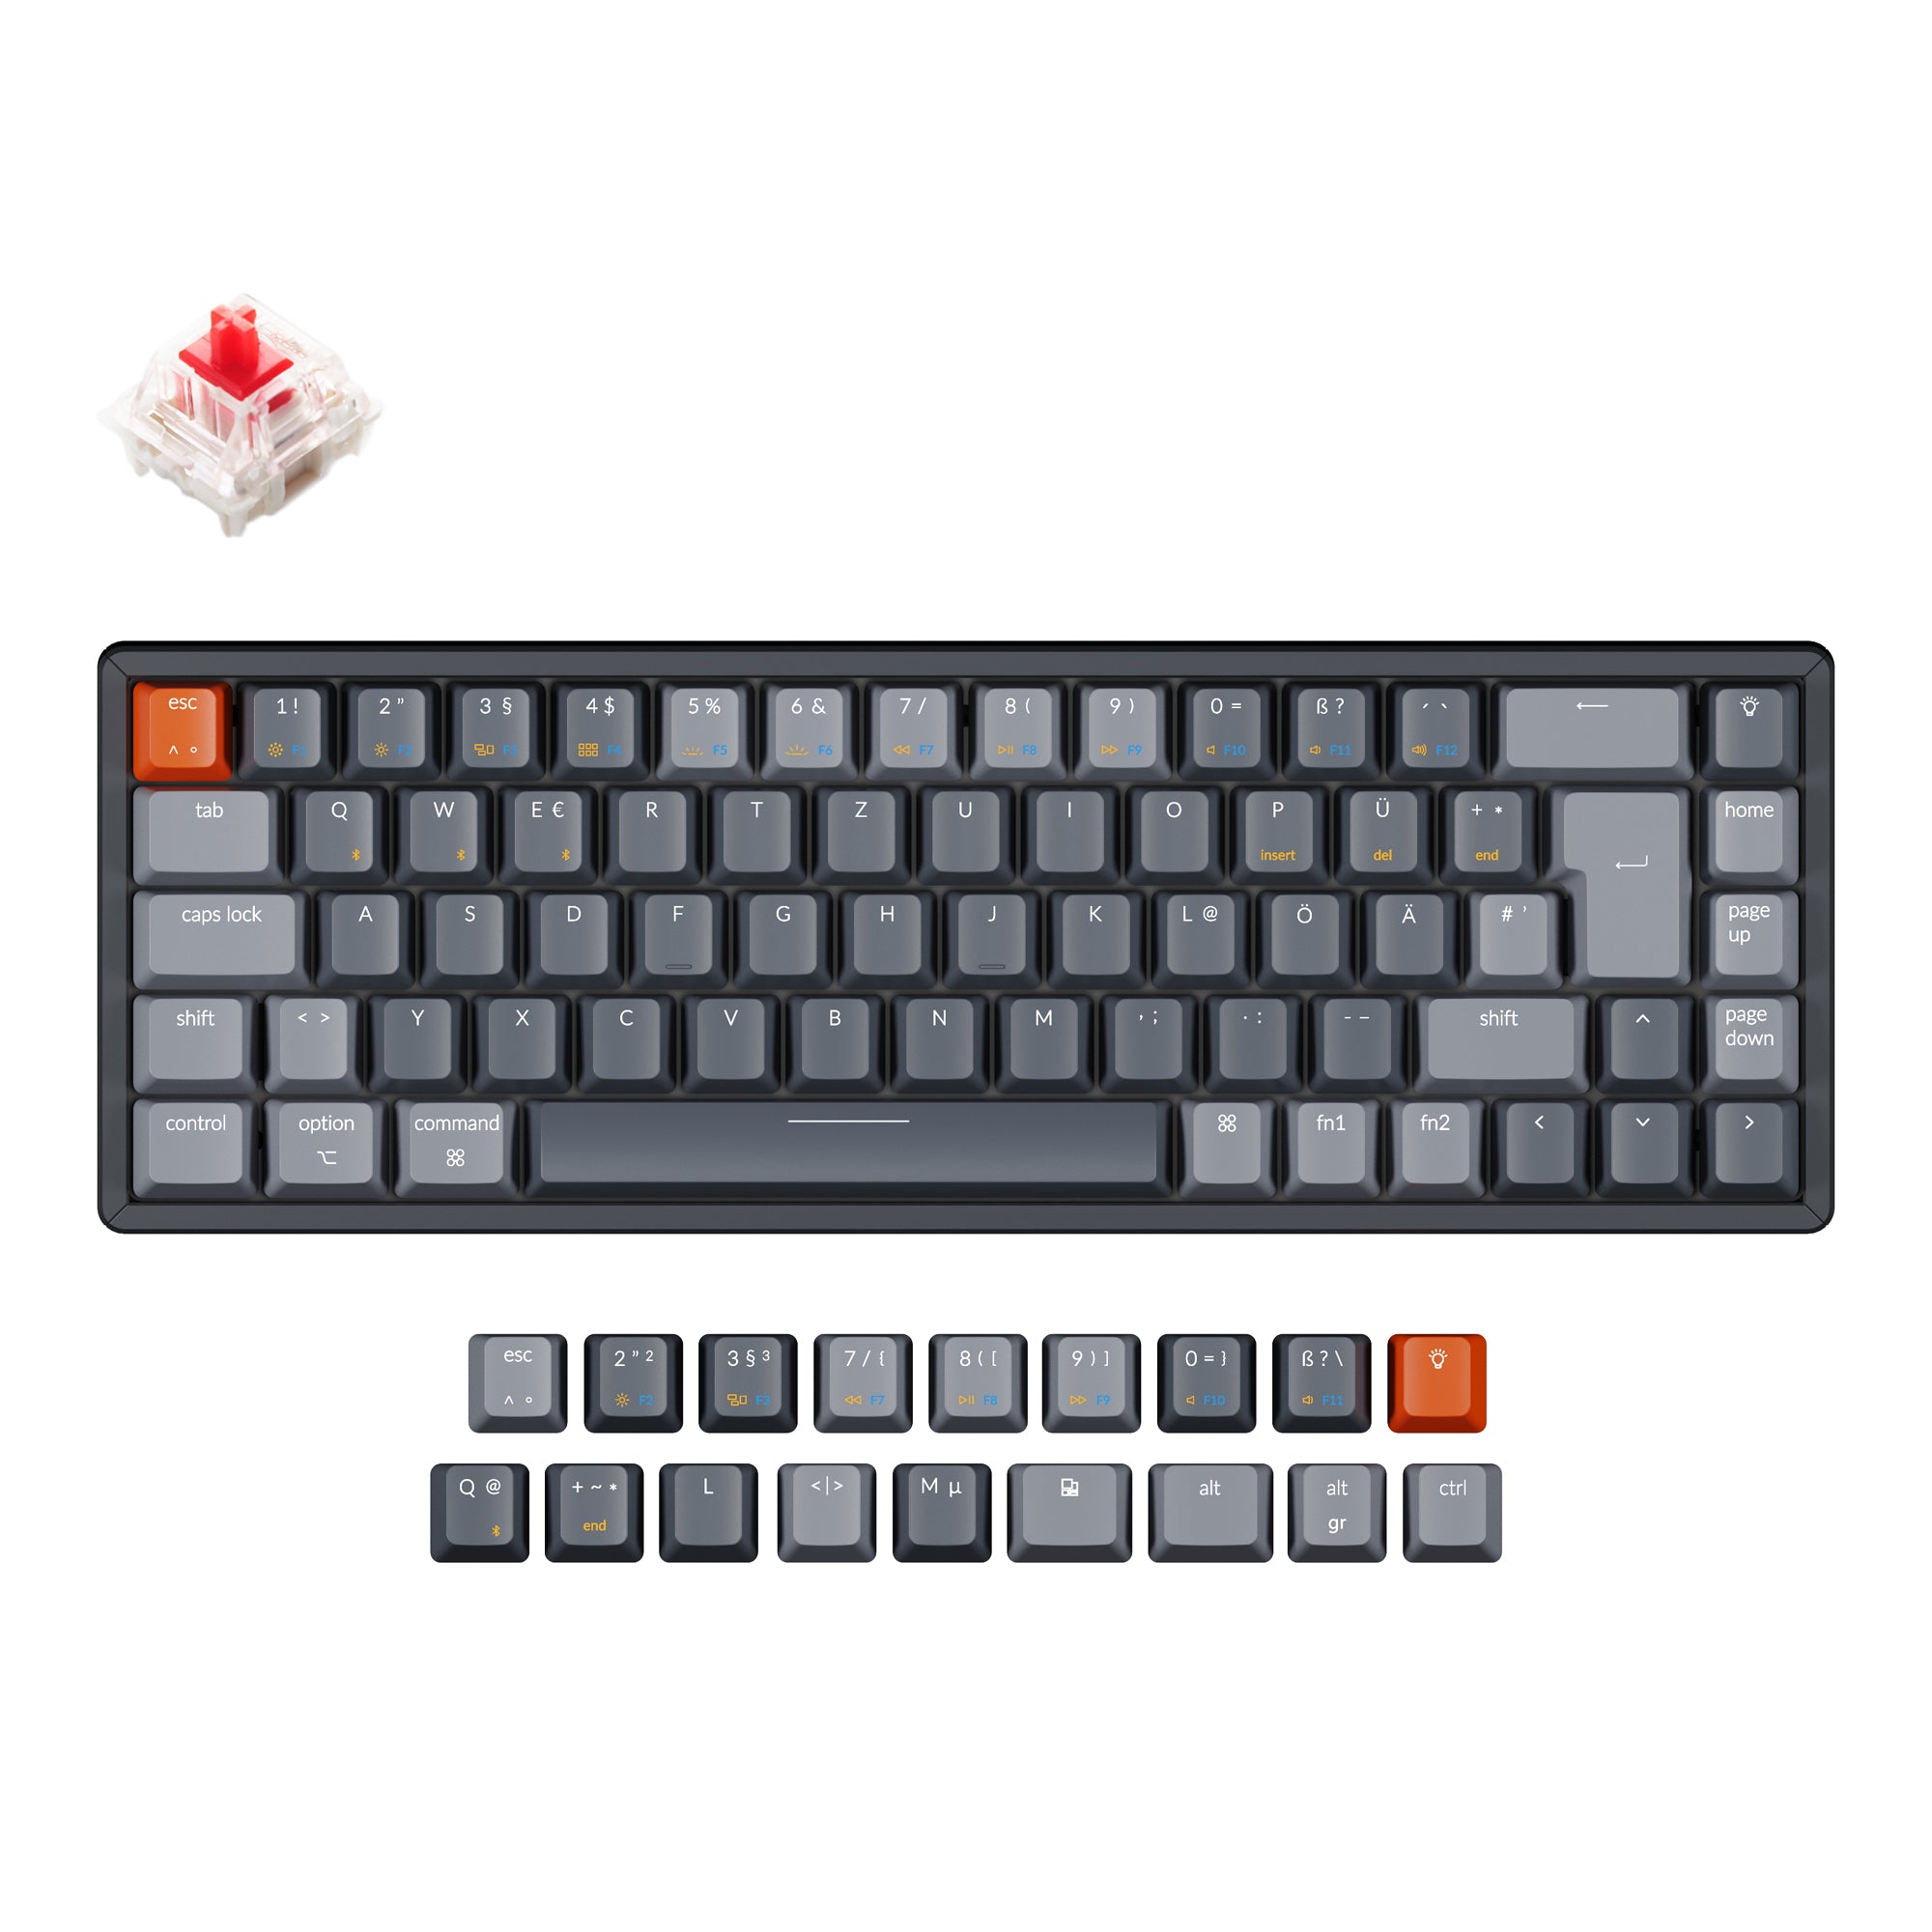 Keychron K6 Wireless Mechanical Keyboard (German ISO-DE Layout)